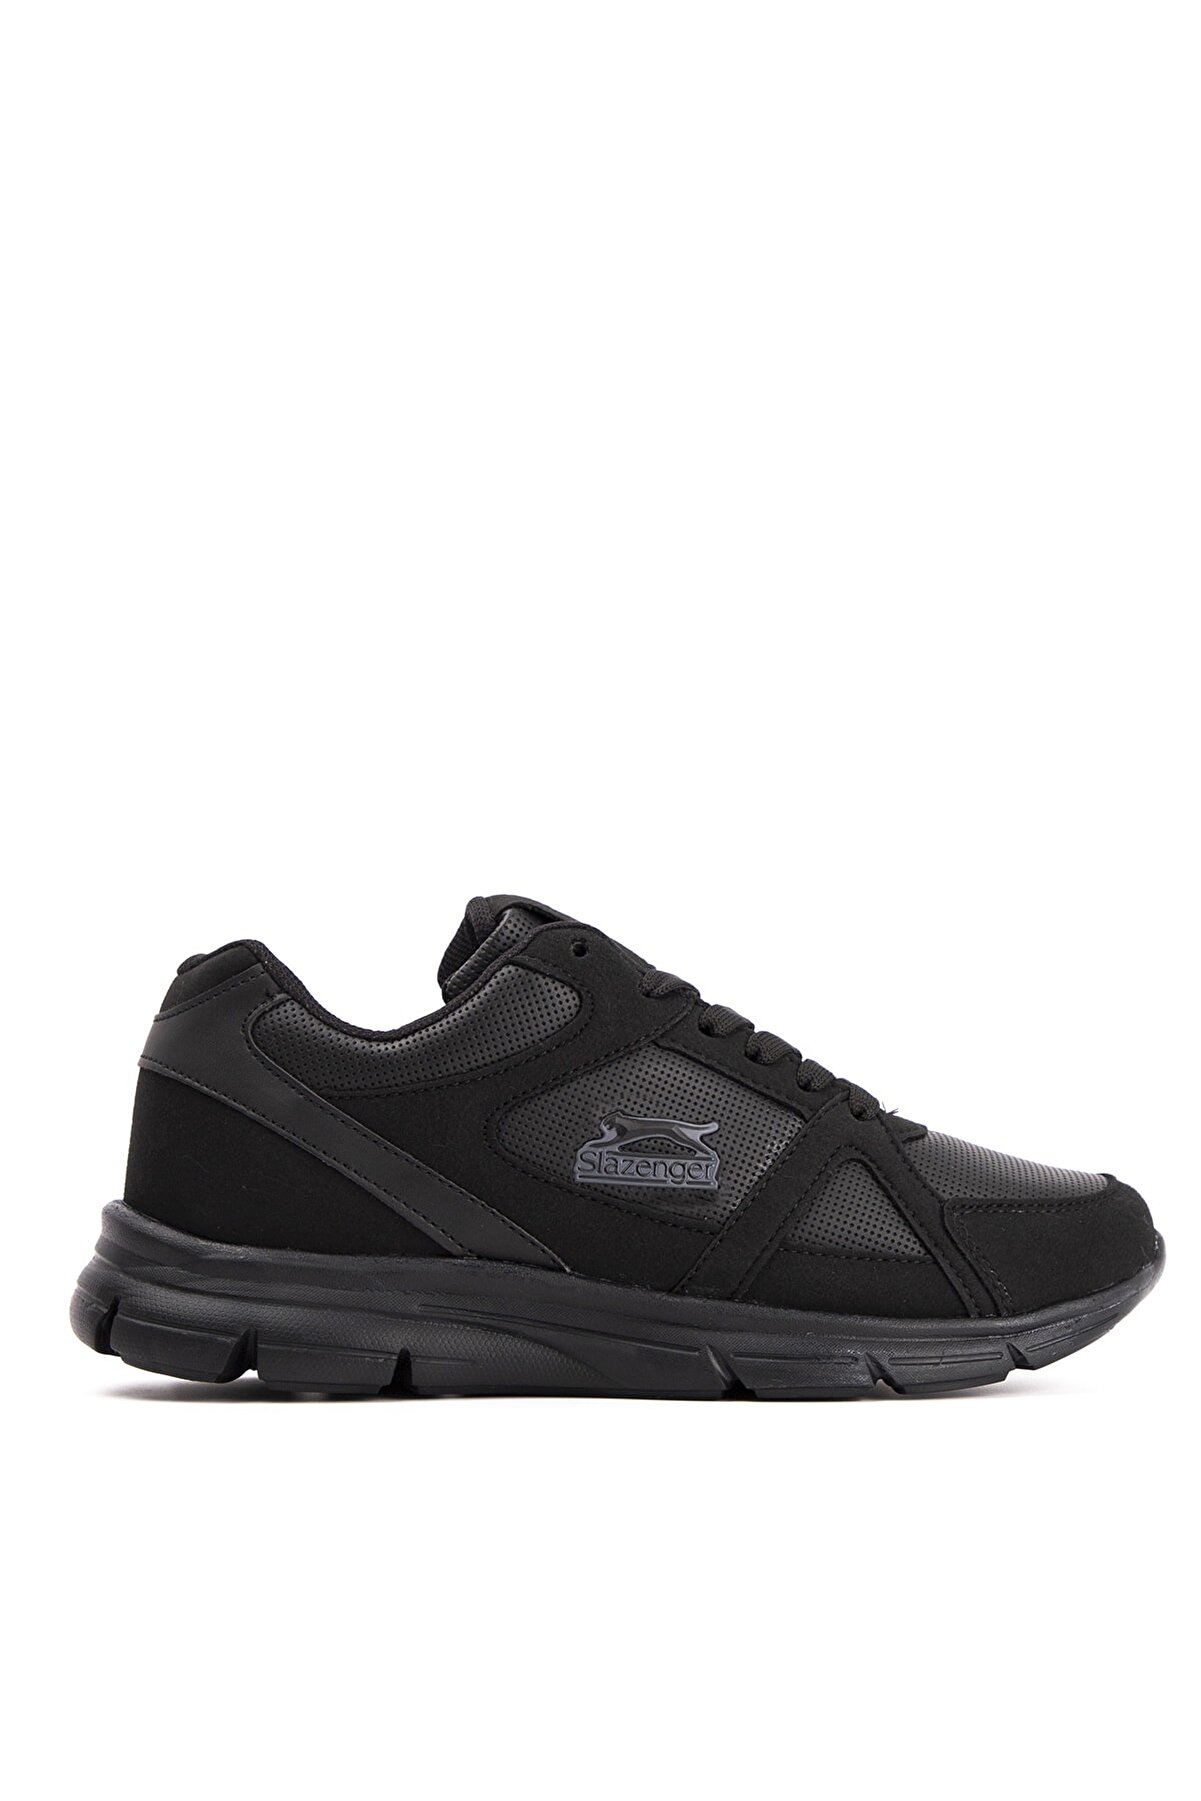 Slazenger Pera Sneaker Kadın Ayakkabı Siyah Sa20rk001